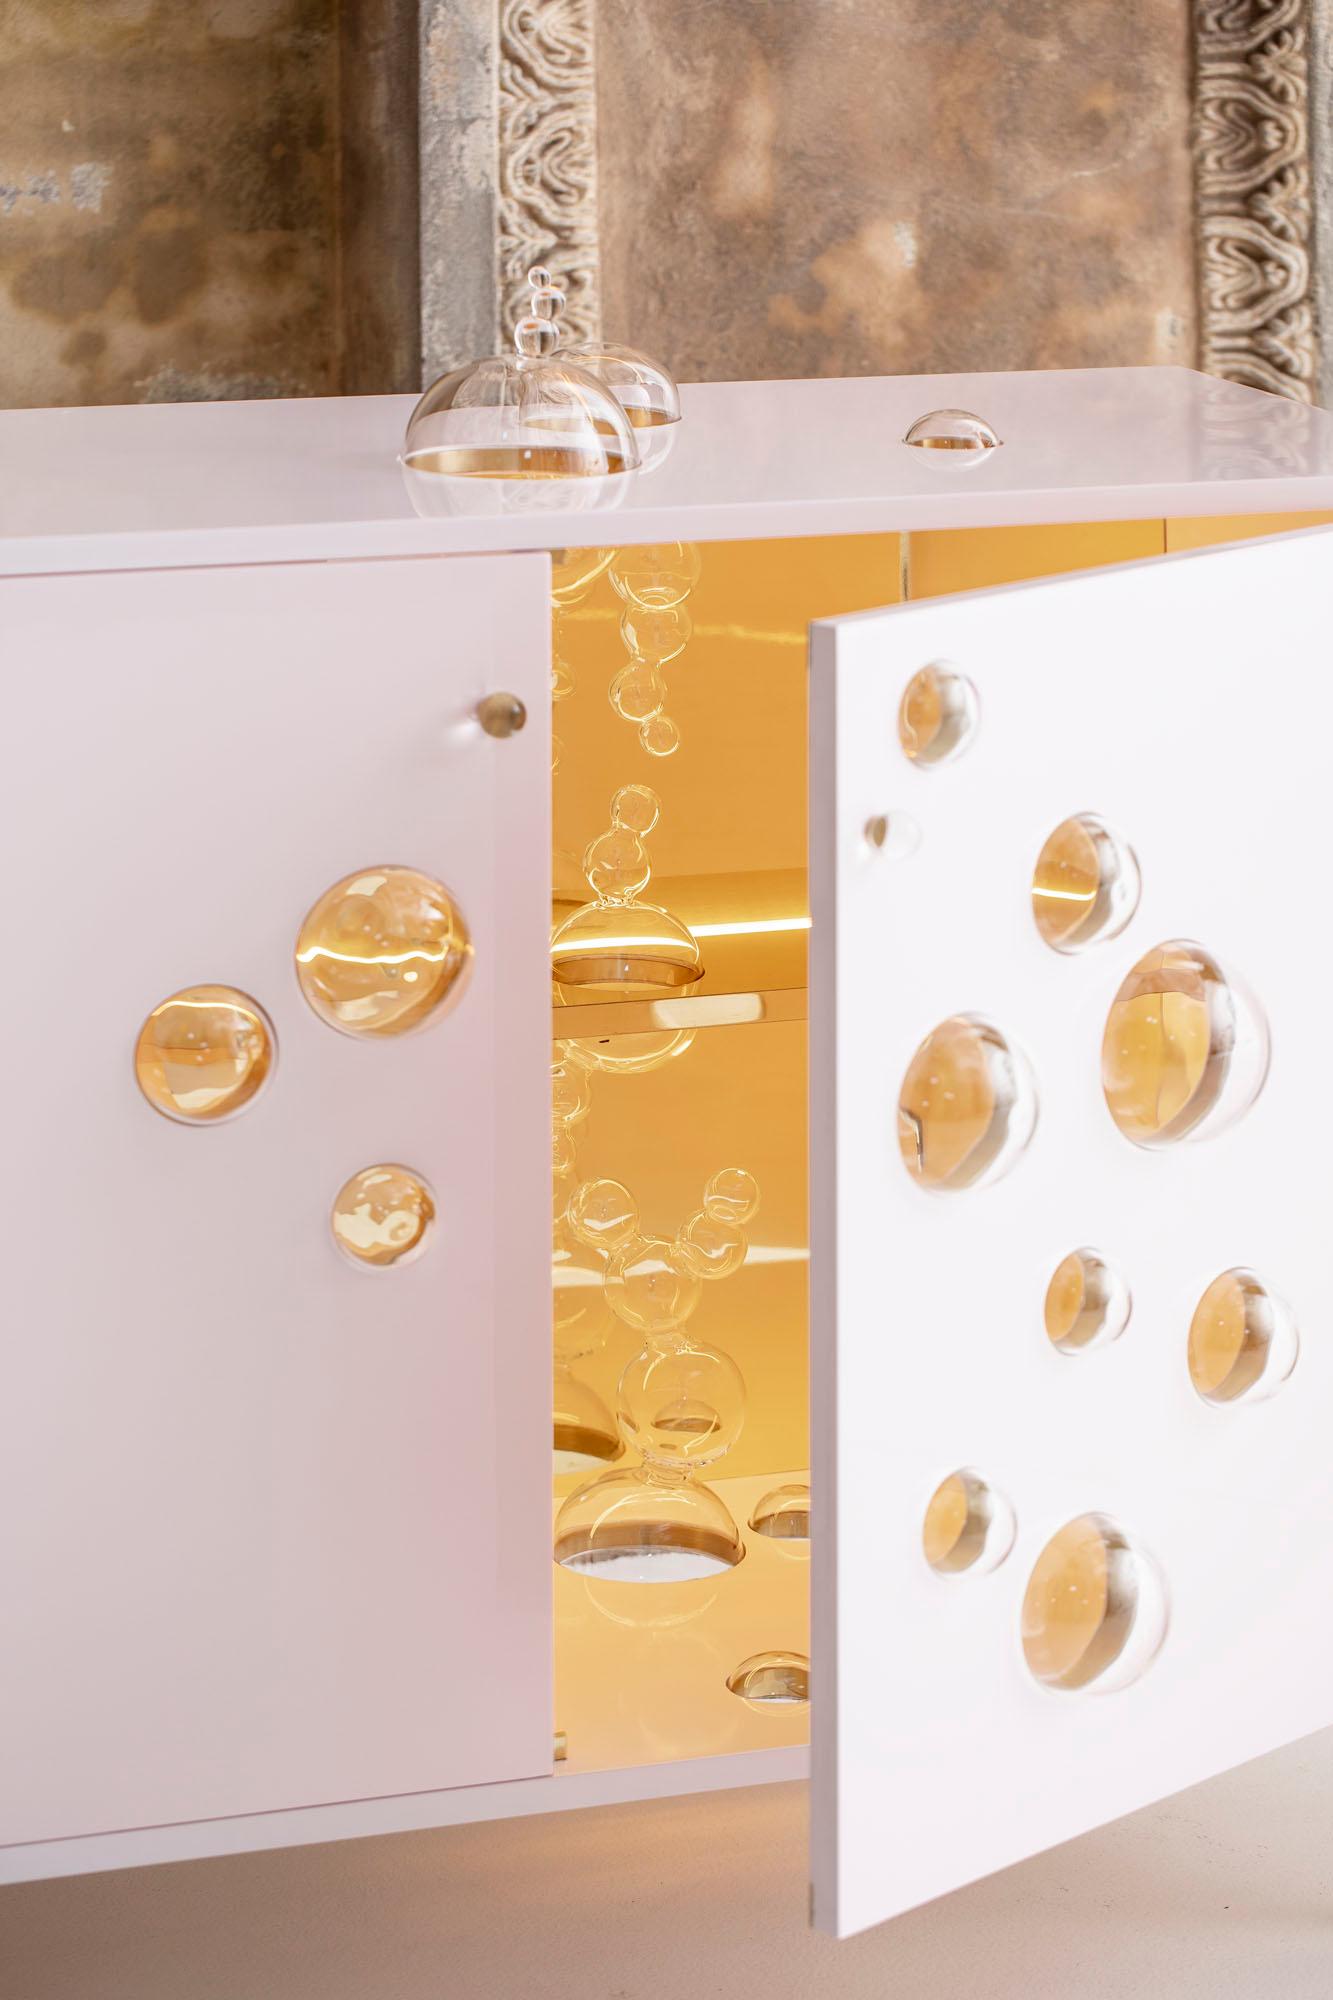 Sparkling cabinet ist ein einzigartiges Projekt, bei dem der Künstler ironisch mit Glas spielt und eine brillante und originelle Dekoration schafft.

Hergestellt in einem Stück aus rosa lackiertem Holz mit Messingdetails und Borosilikatglas.
Im